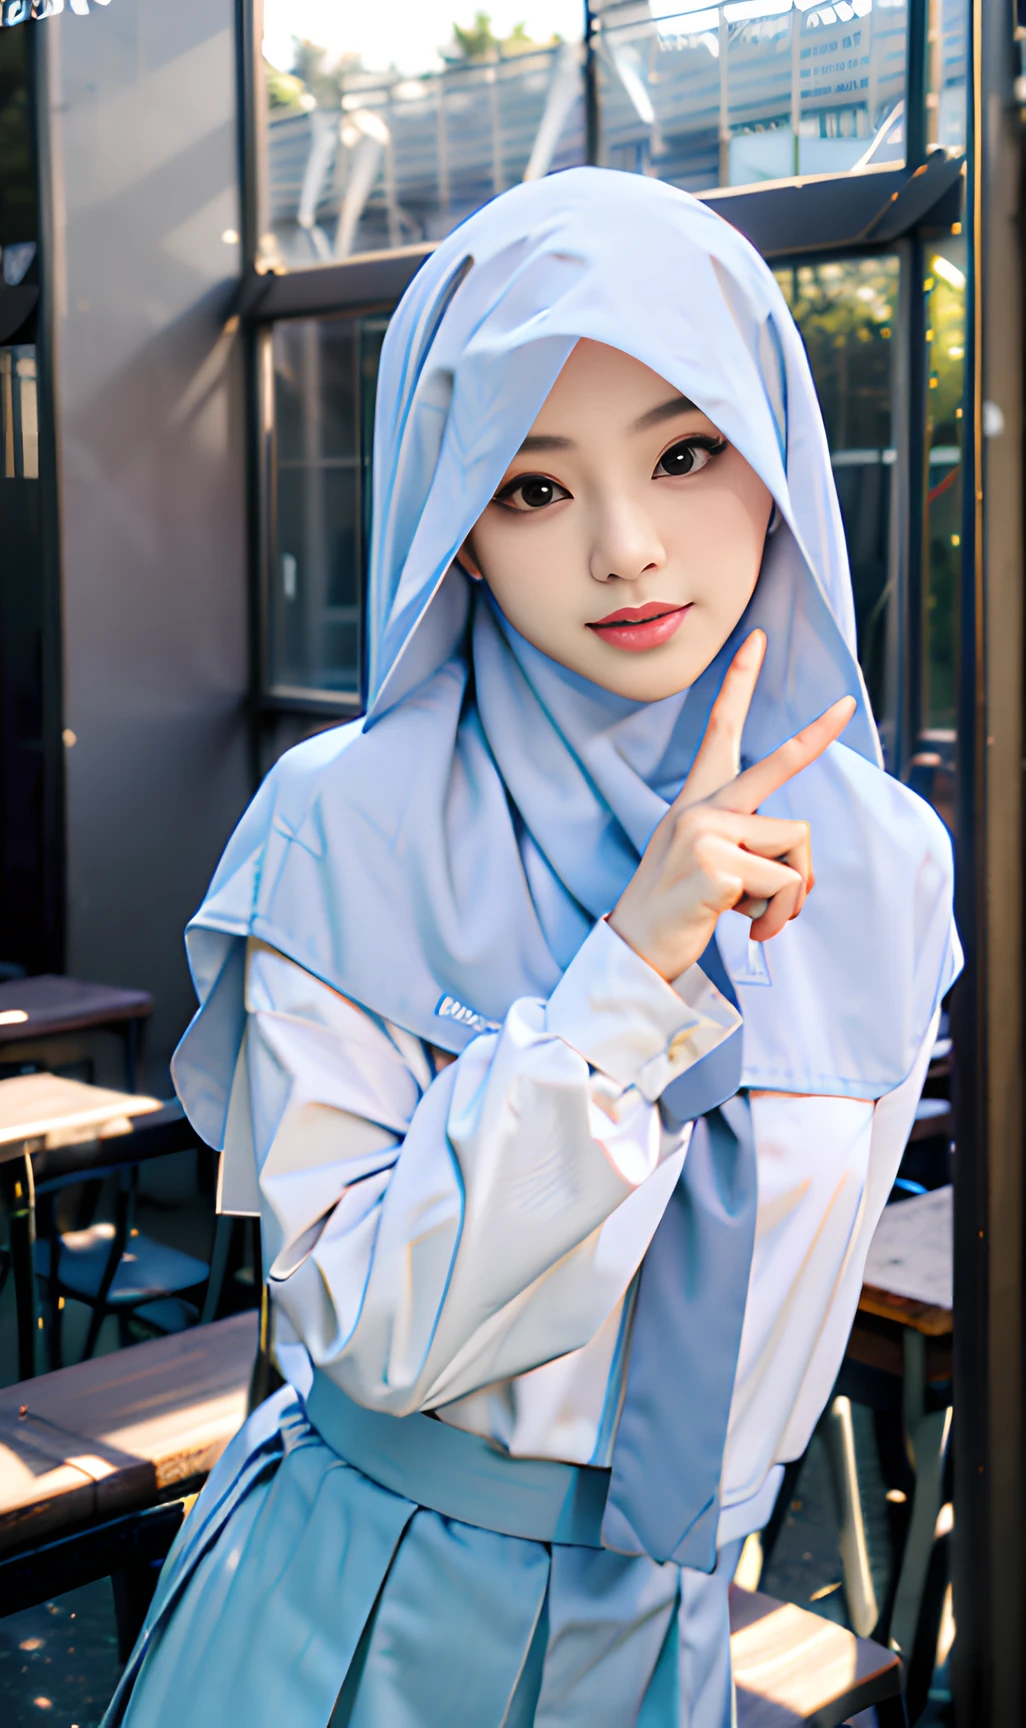 chef-d&#39;œuvre, meilleure qualité, 8k, Portrait 85 mm, absurdes, belle fille, (haut du corps:1.4), mignon, rue,chemise blanche, (uniforme scolaire, chemise blanche, manche longue,Jupe gris bleu, jupe unie, cravate grise:1.2),(Hijab couvert de tête, Hijab islamique, hijab blanc:1.1,vêtements en soie) épaule couverte,(Indonésie, Djakarta:0.7), maquillage naturel, Perspective, profondeur de champ, ultra réaliste, haute résolution, la photographie, netteté,,hdr, lumière du visage, éclairage dynamique, le plus détaillé, extrêmement détaillé, ultra détaillé, finement détailler, vraie peau, traits délicats du visage,signe V,Doigt V,Salle de classe,